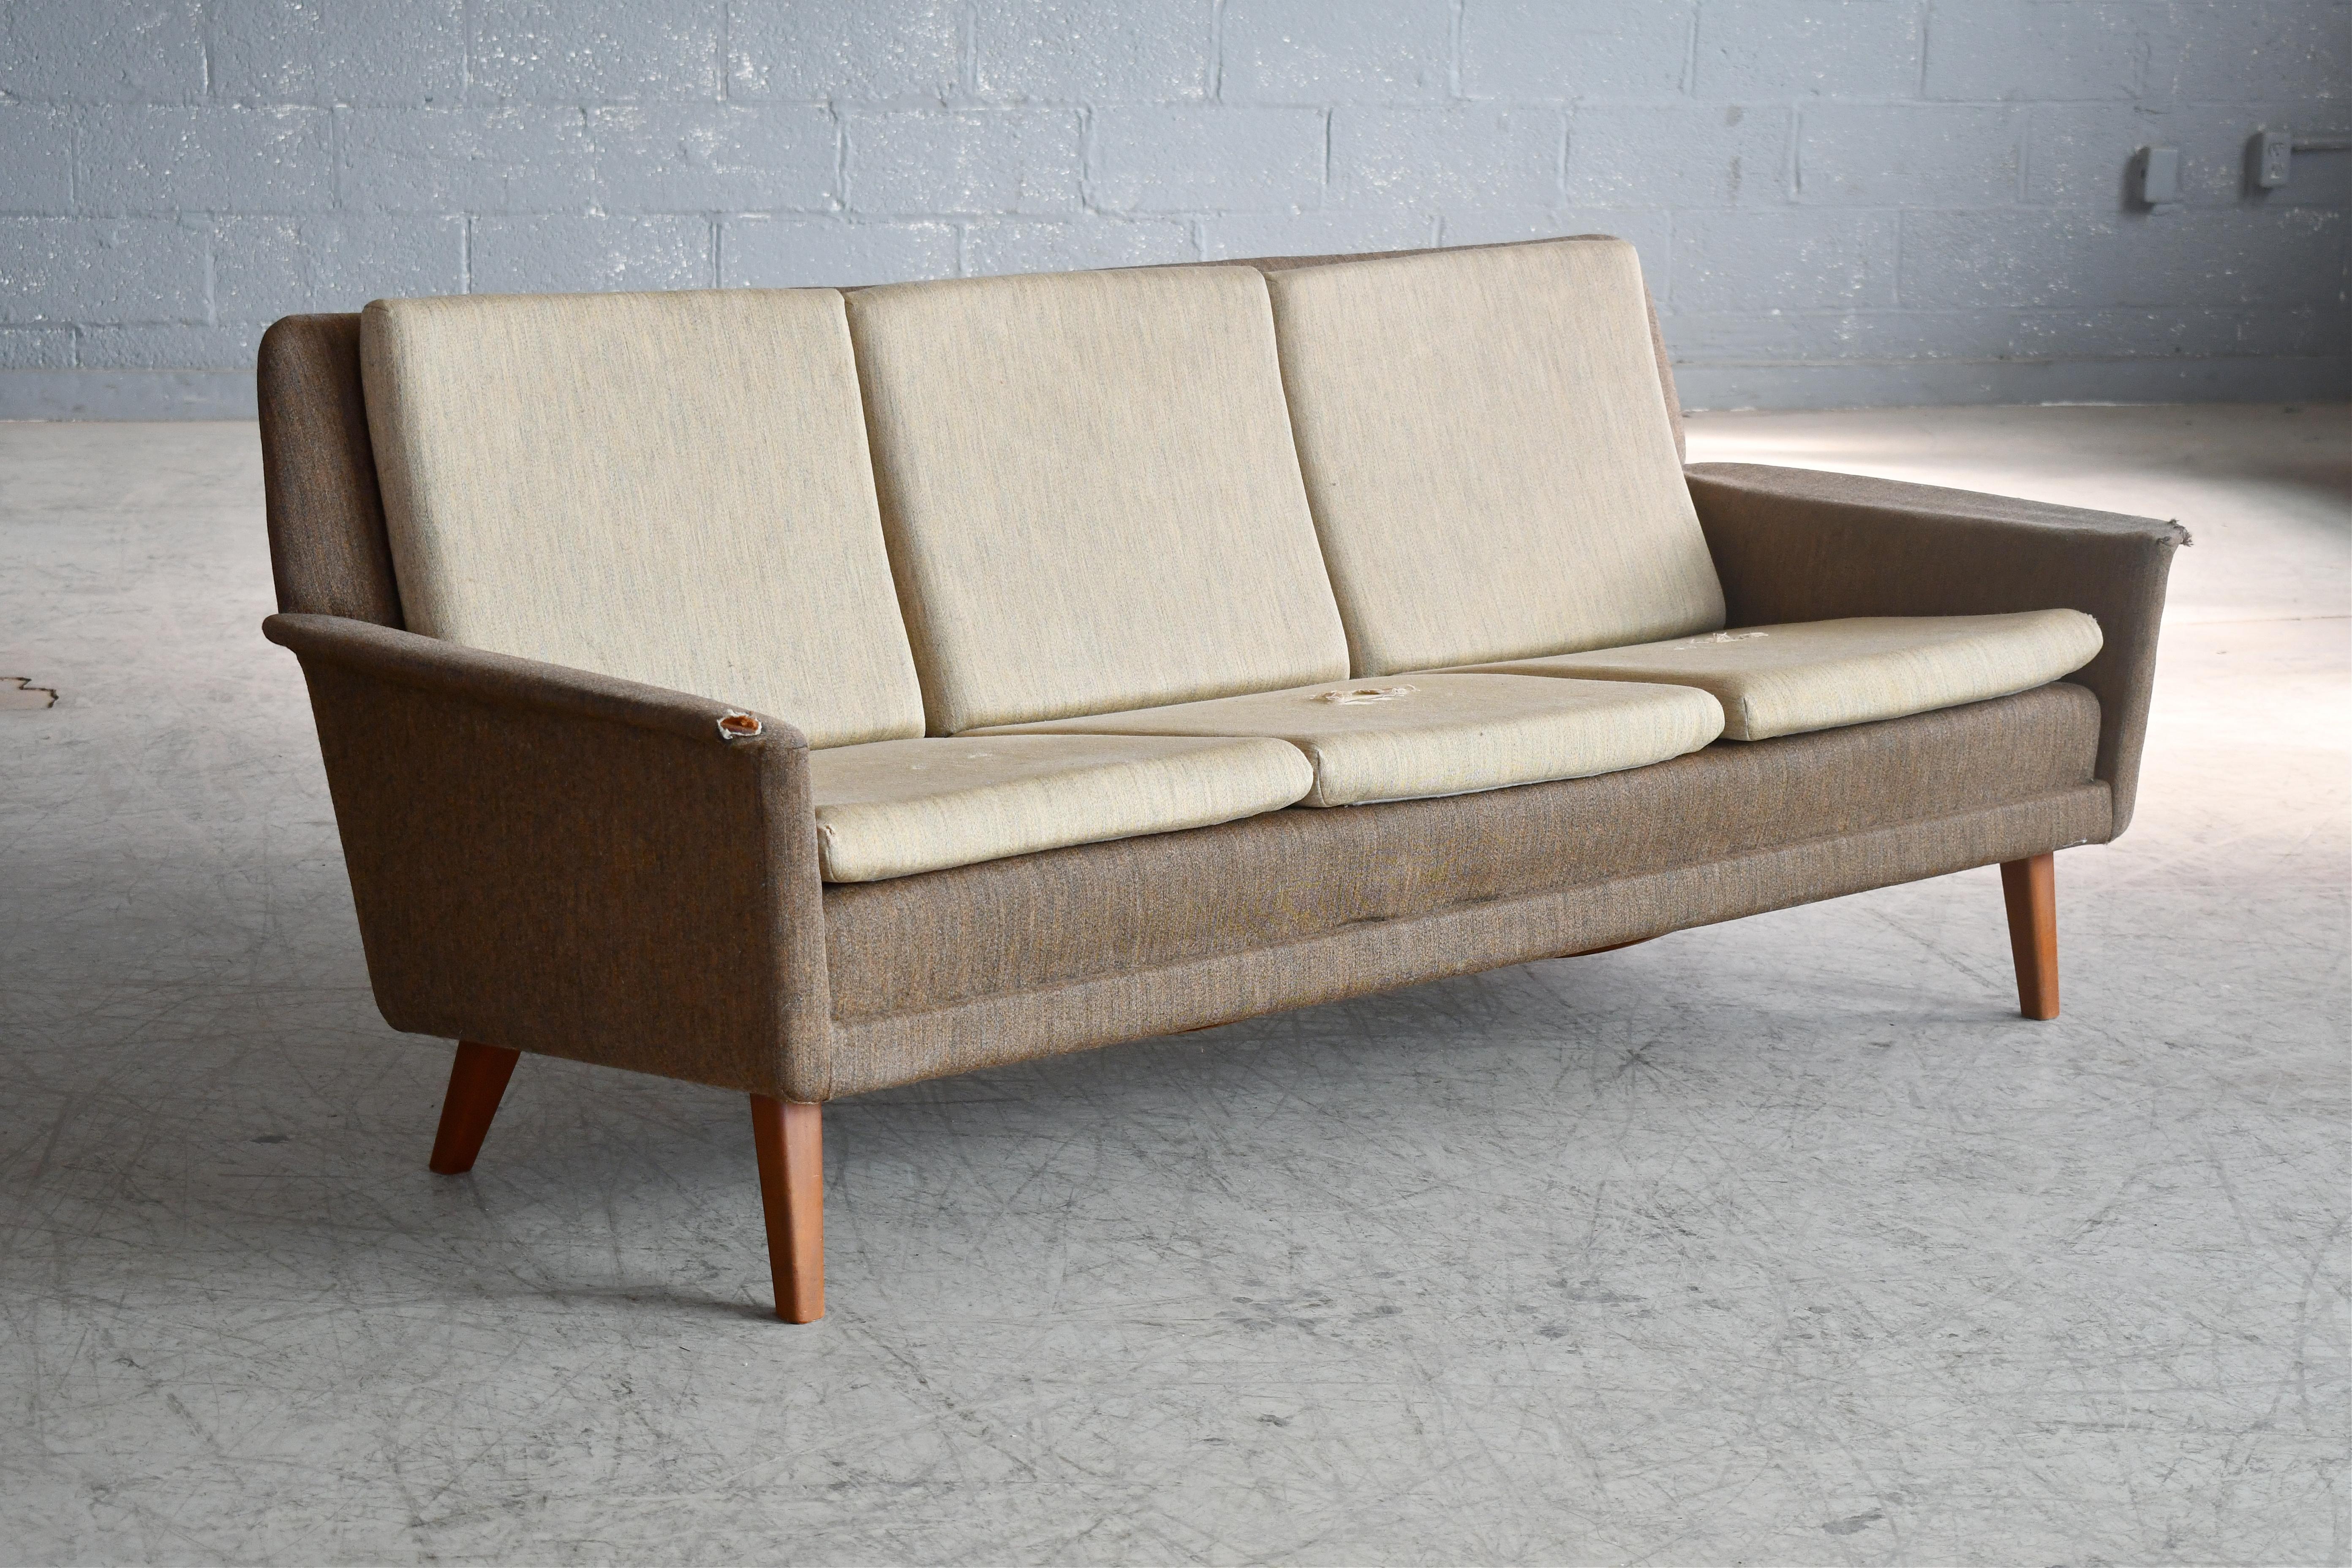 Classique et très élégant canapé trois places conçu par Folke Ohlsson en 1955 comme modèle 5464 pour Fritz Hansen. Nous aimons les angles élégants du canapé et des pieds combinés aux coussins fins posés sur des pieds en teck. Très avant-gardiste à